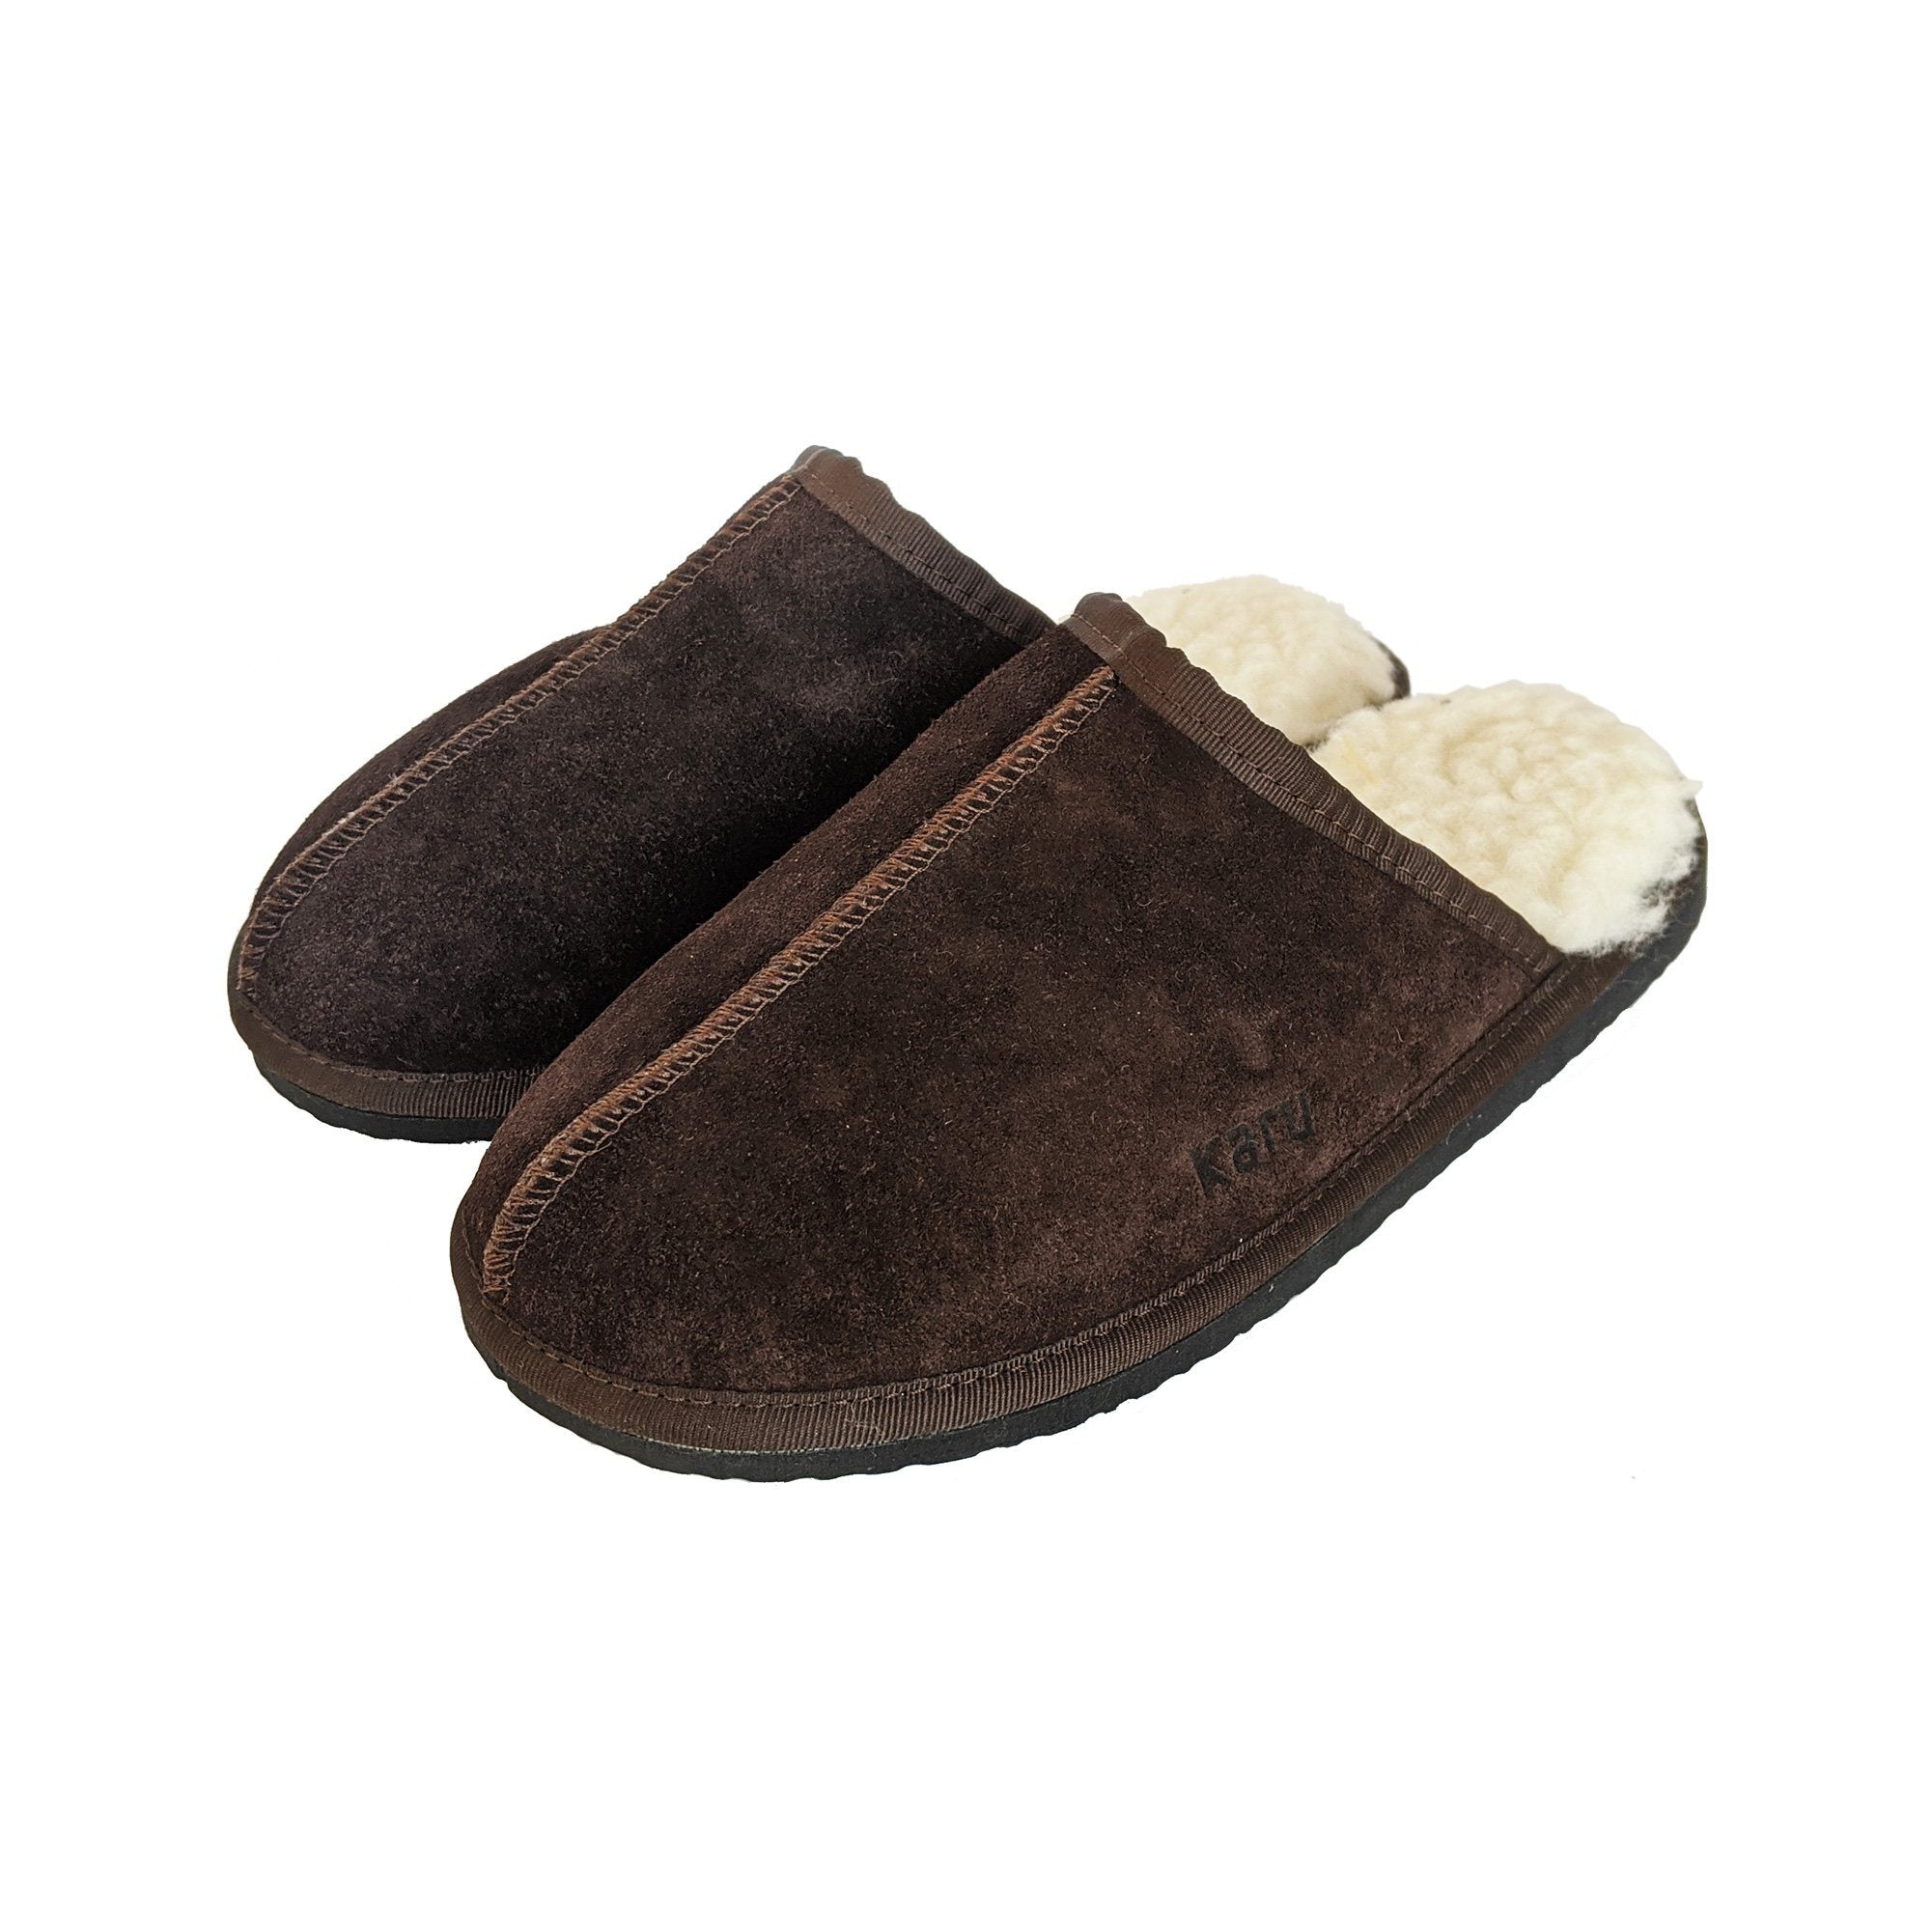 Karu Mule Chocolate Sheepskin & Wool Slippers clothing & accessories Karu Slippers